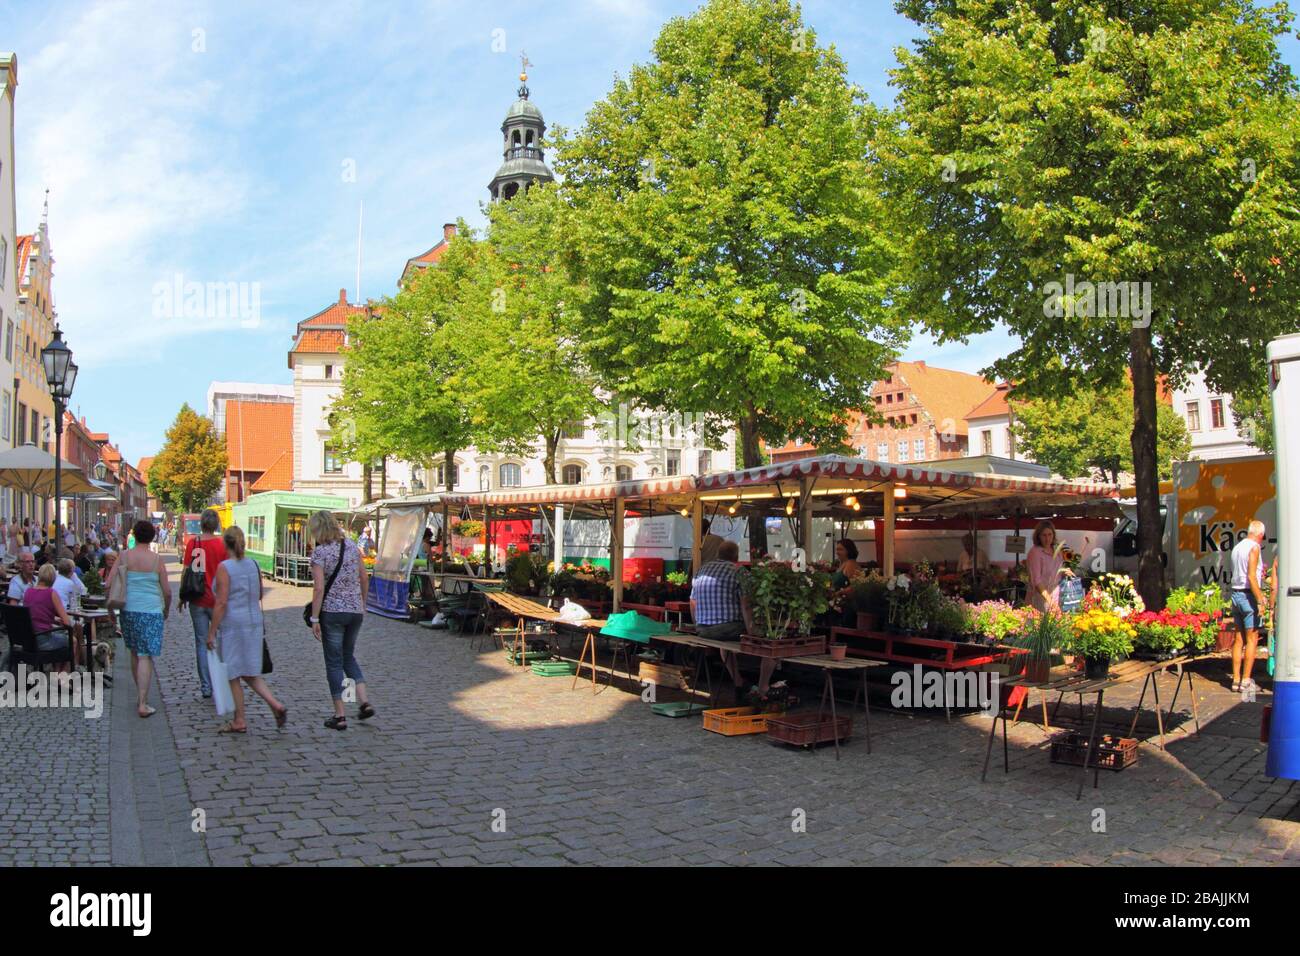 Deutschland - 27. Juli 2013: Markt neben dem Rathaus in Lübeck, Marktplatz. Wochenmarkt für frische und hochwertige Produkte. Zu sehen ist die Anlage Stockfoto